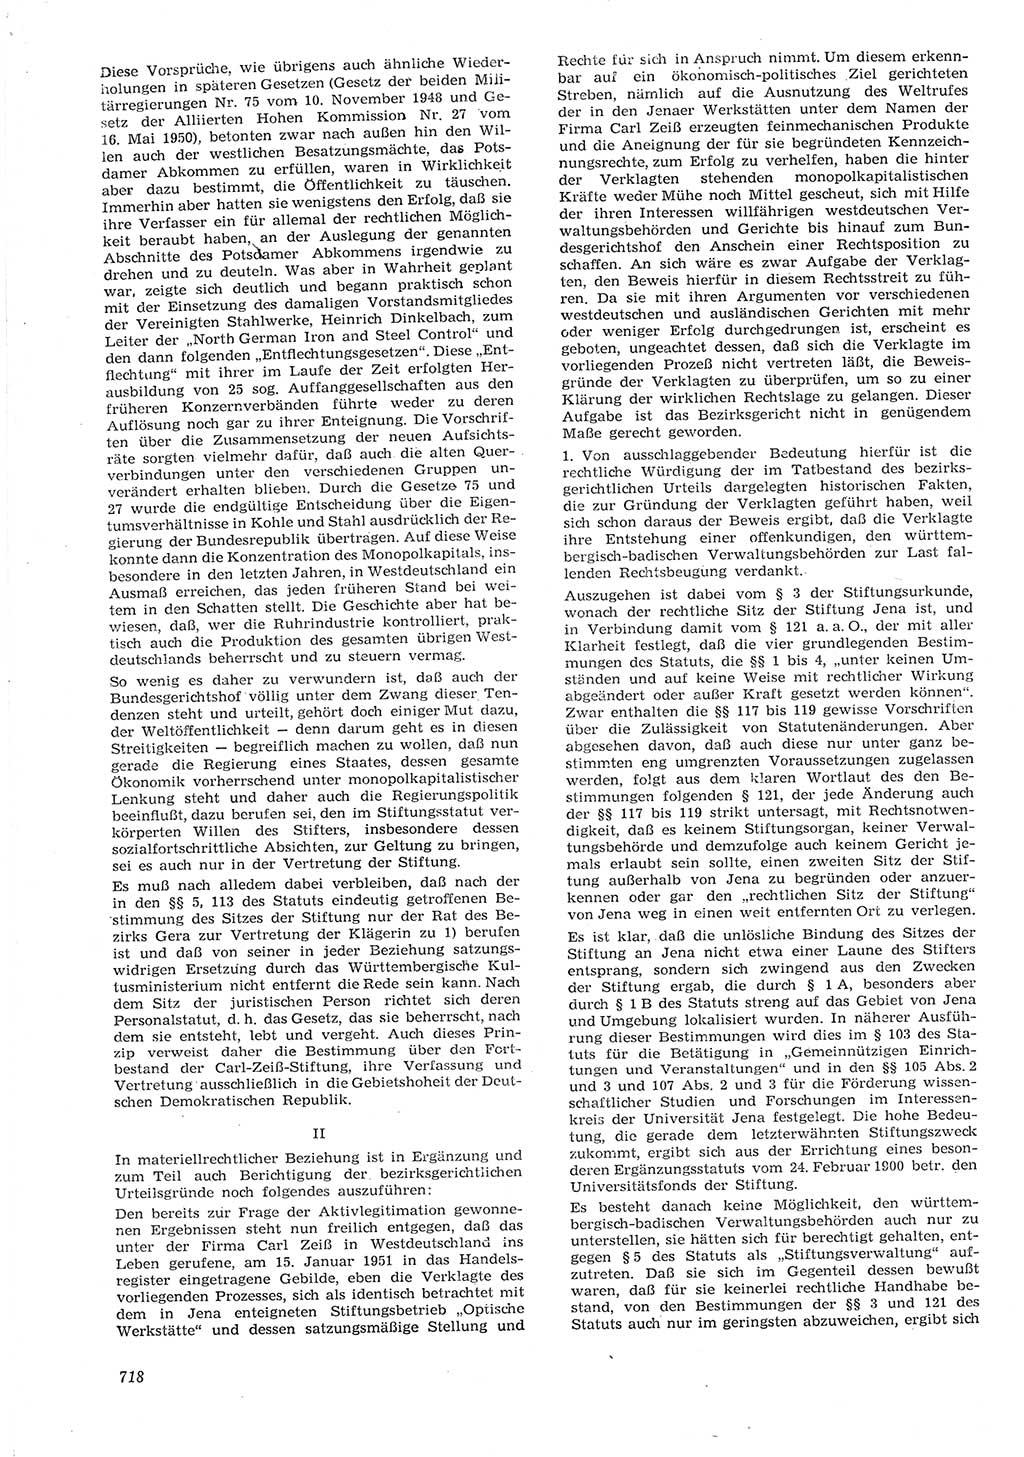 Neue Justiz (NJ), Zeitschrift für Recht und Rechtswissenschaft [Deutsche Demokratische Republik (DDR)], 15. Jahrgang 1961, Seite 718 (NJ DDR 1961, S. 718)